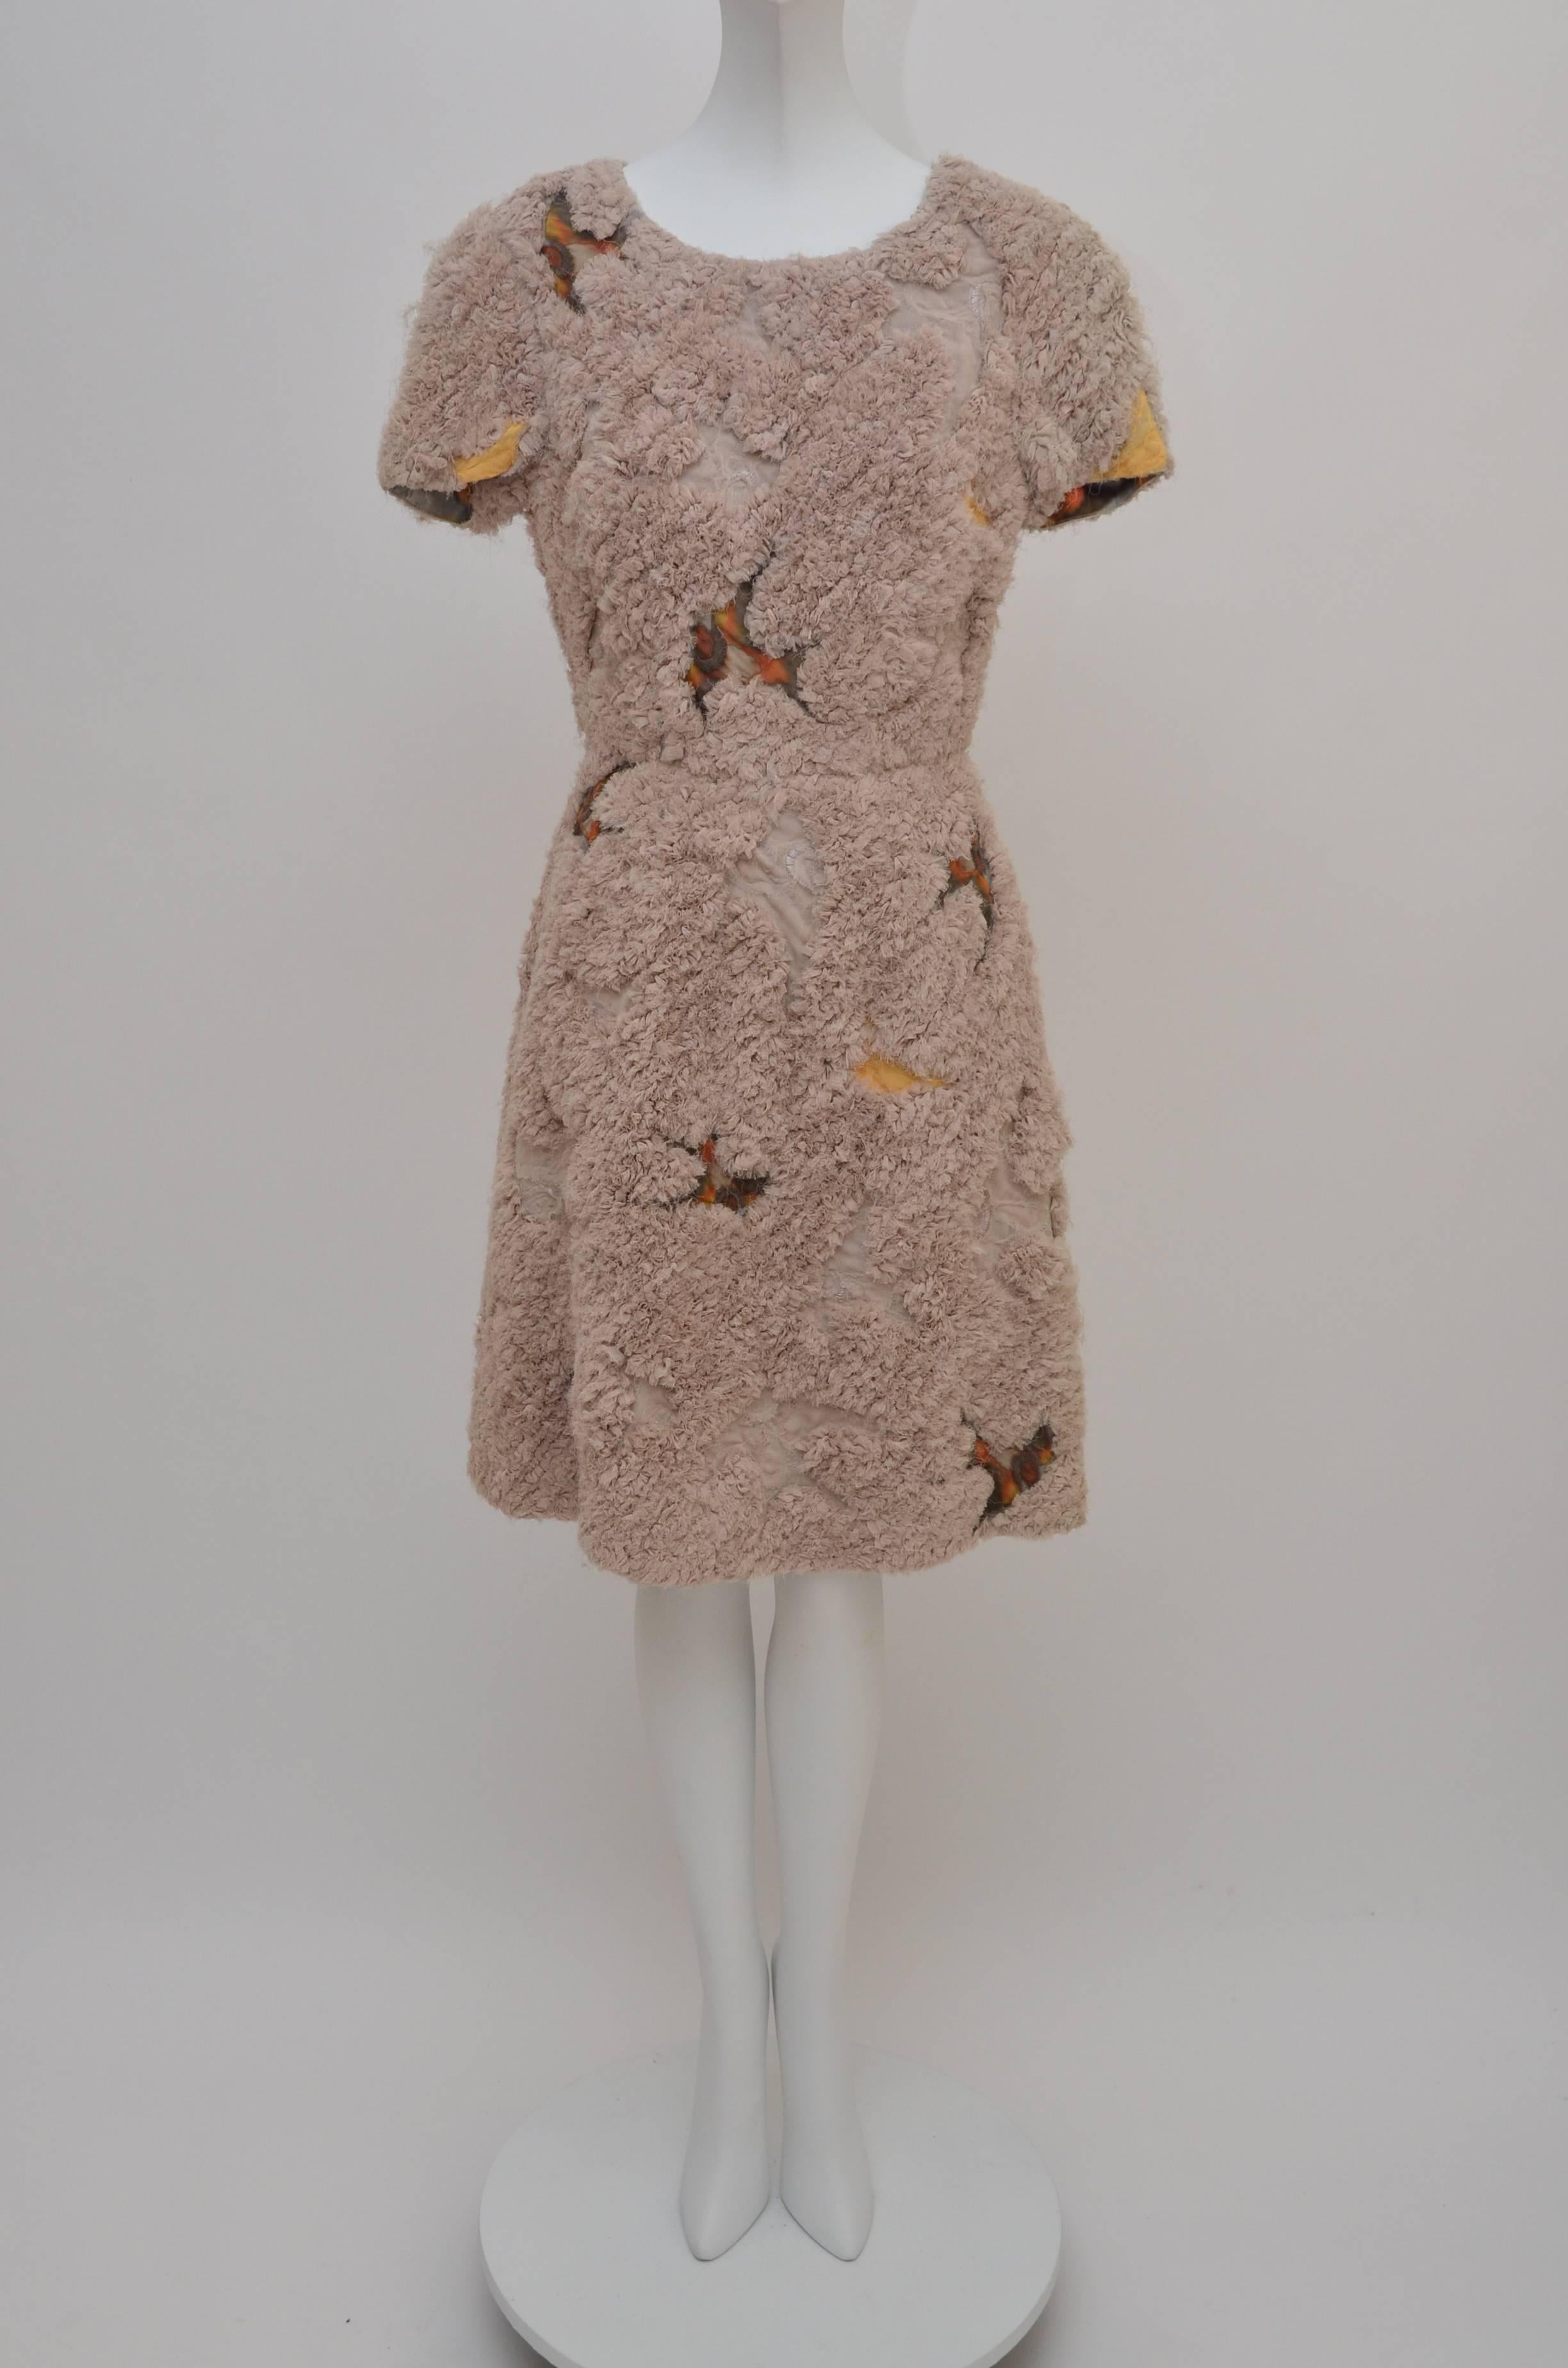 Erdem Printemps 2010  robe très romantique  avec des oiseaux, étonnant  texture  et le résultat final obtenu avec  un mètre de tissu de chiffon....
Imaginez combien de mètres ont été utilisés pour cette robe, ou comment elle a été fabriquée.
Taille